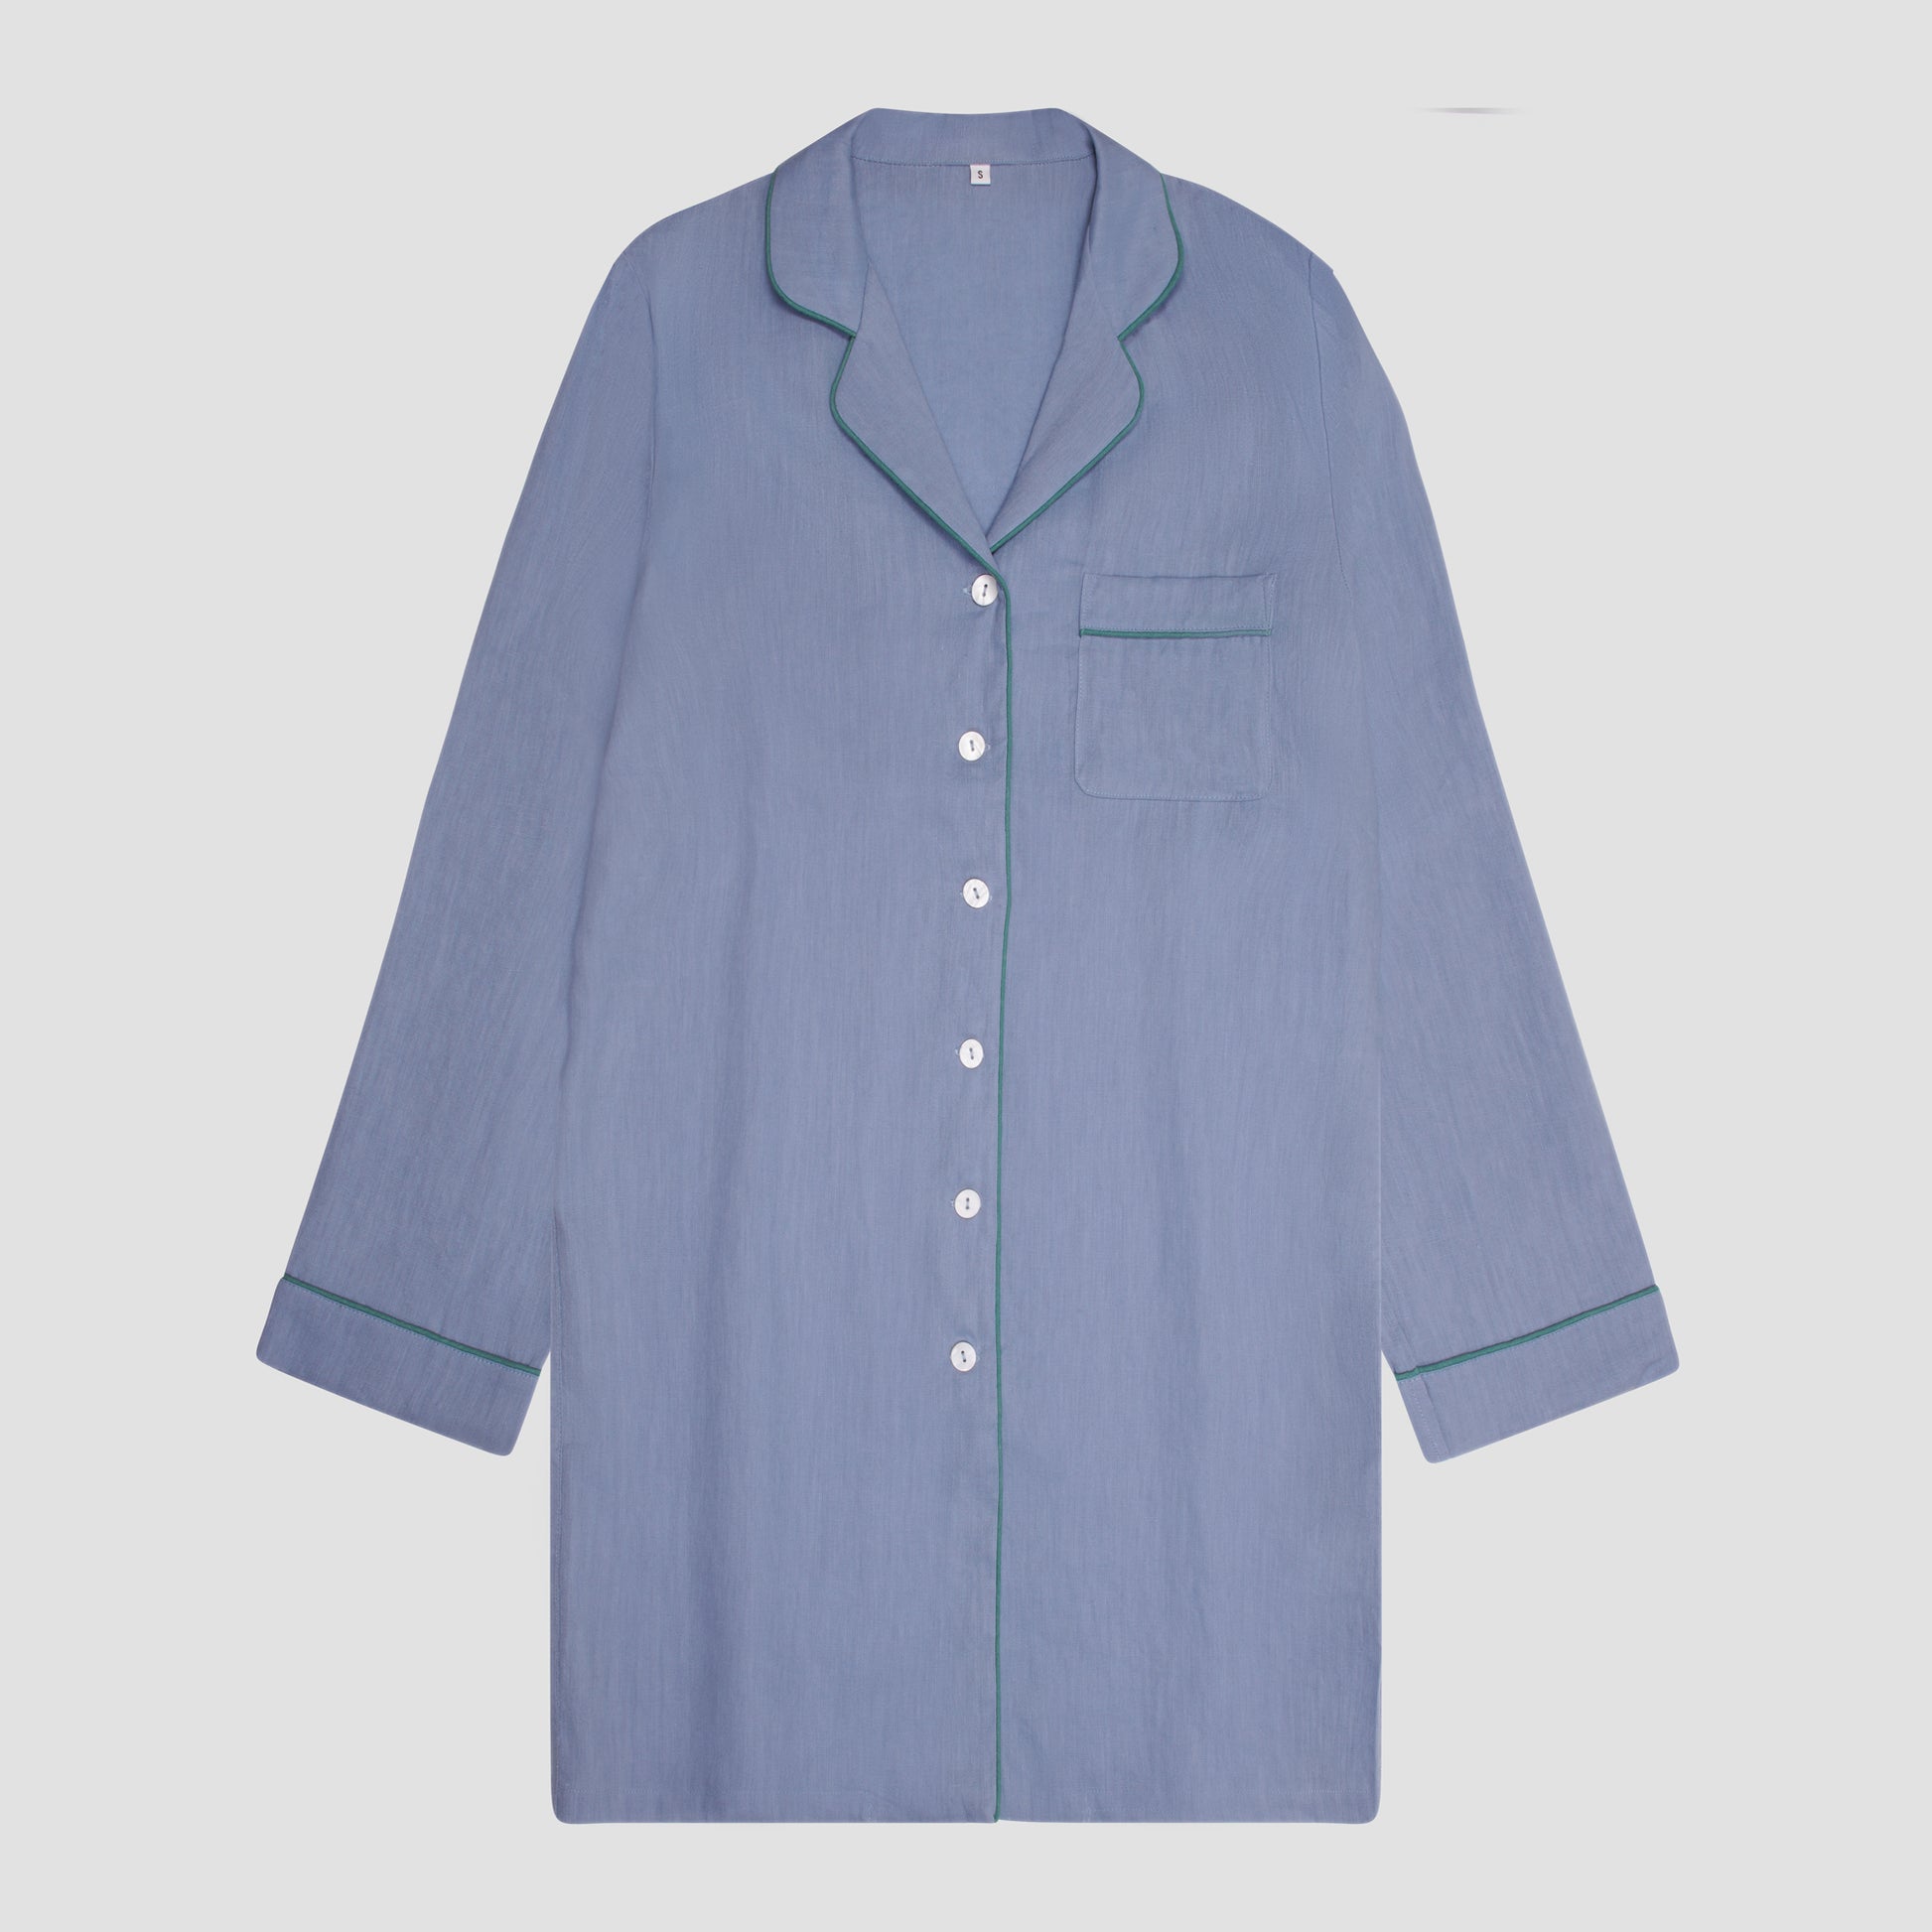 Wave Blue Linen Women's Night Shirt